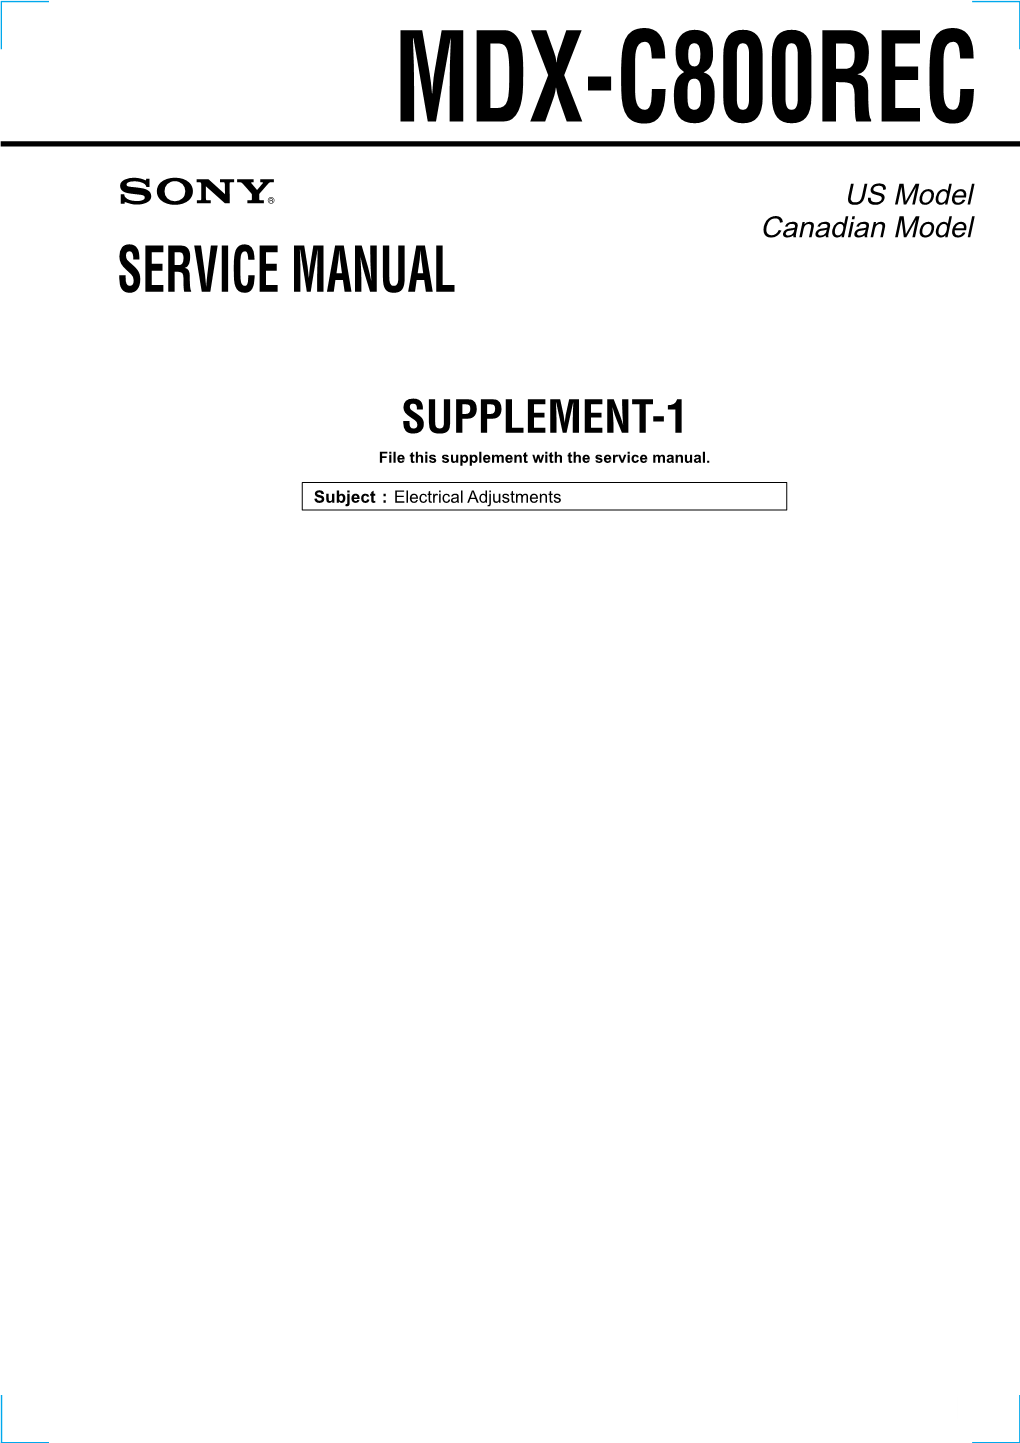 Service Manual Mdx-C800rec